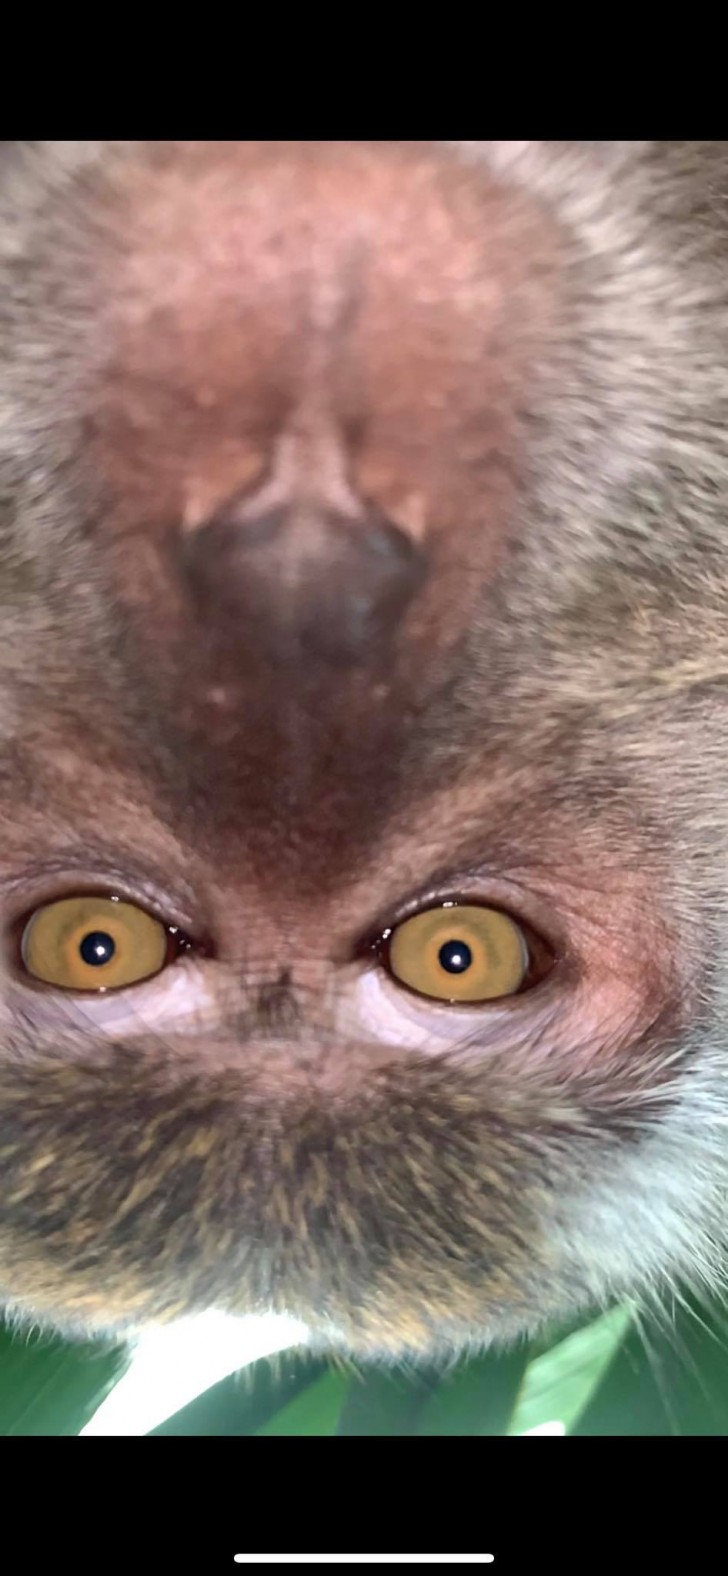 Che le scimmie abbiano capito come scattare delle foto?